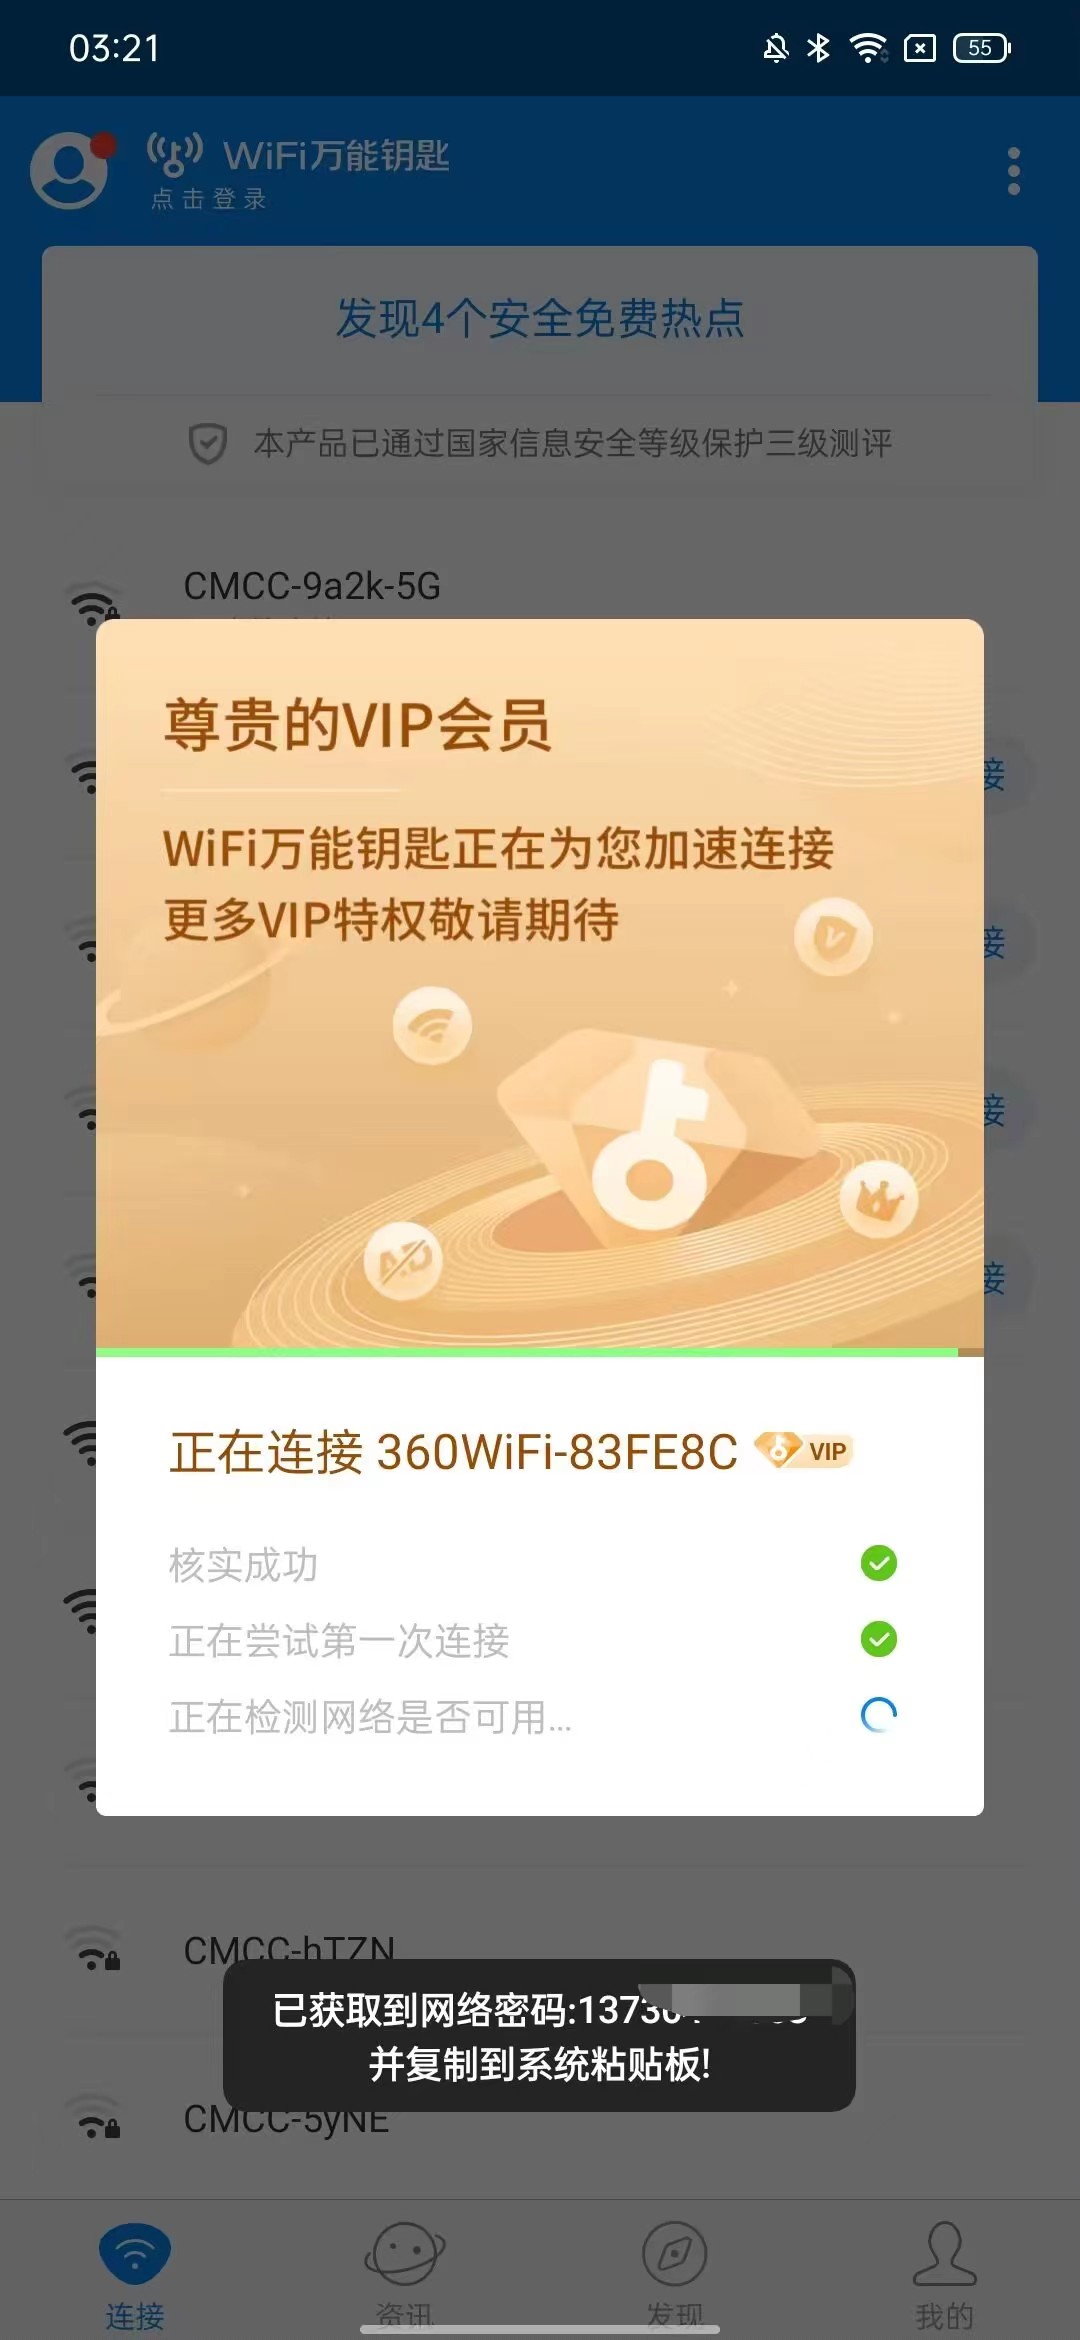 WIFI万能钥匙修复版去广告解锁SVIP 屠城辅助网www.tcfz1.com3821